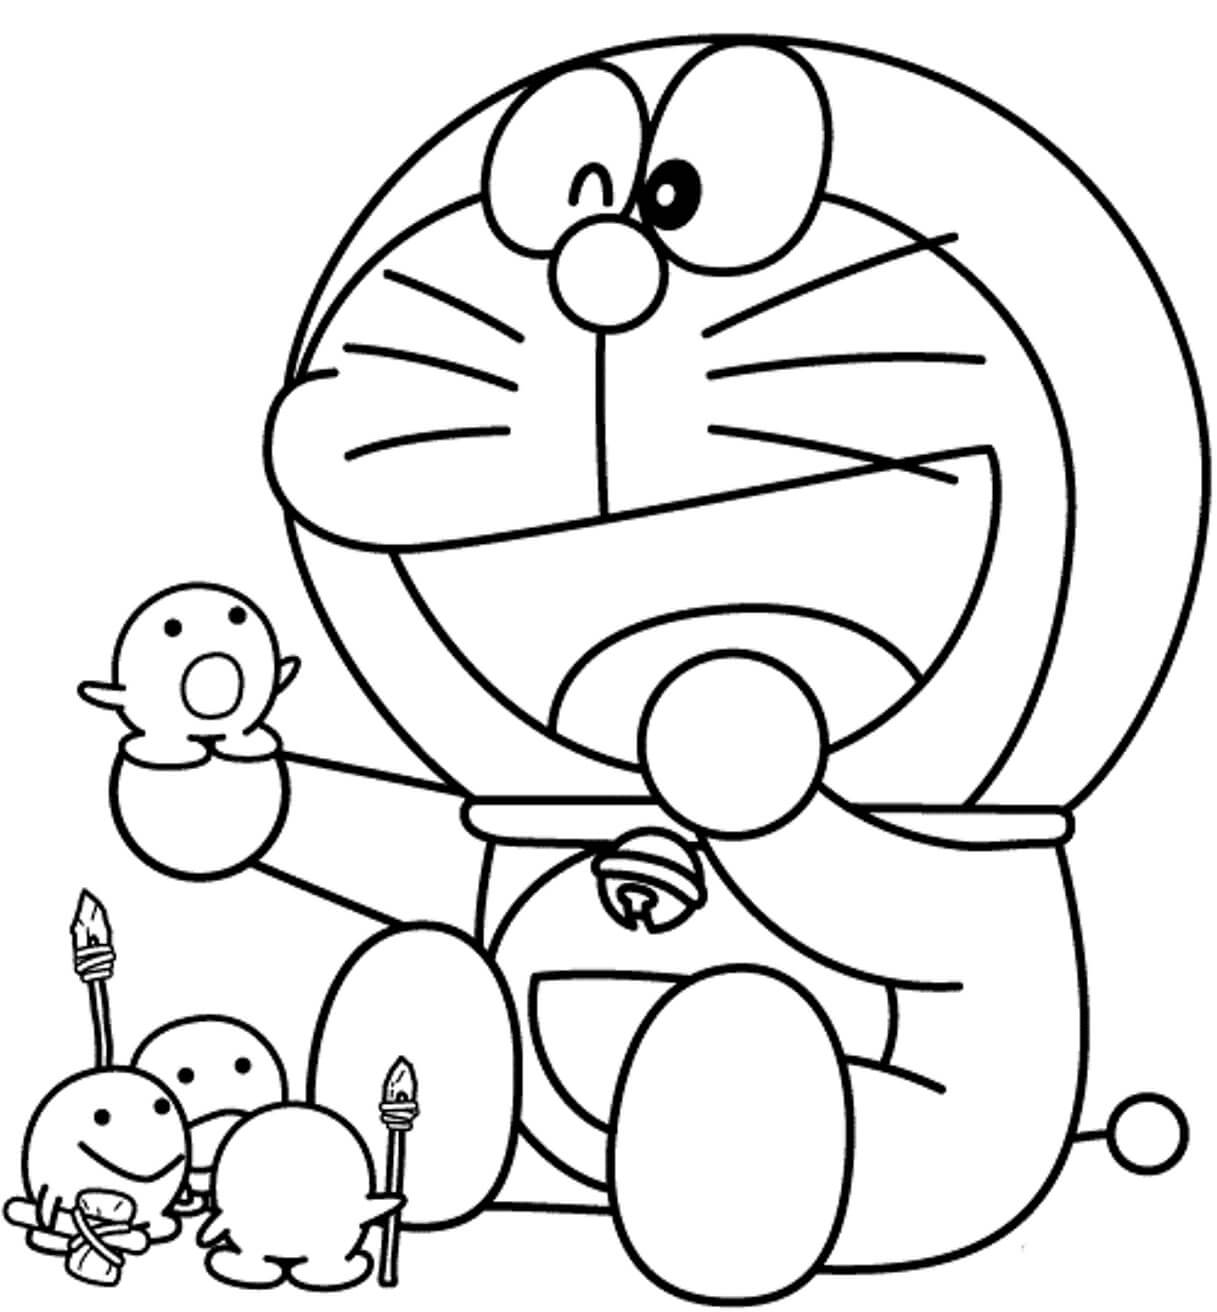 Doraemon E Seus Brinquedos para colorir